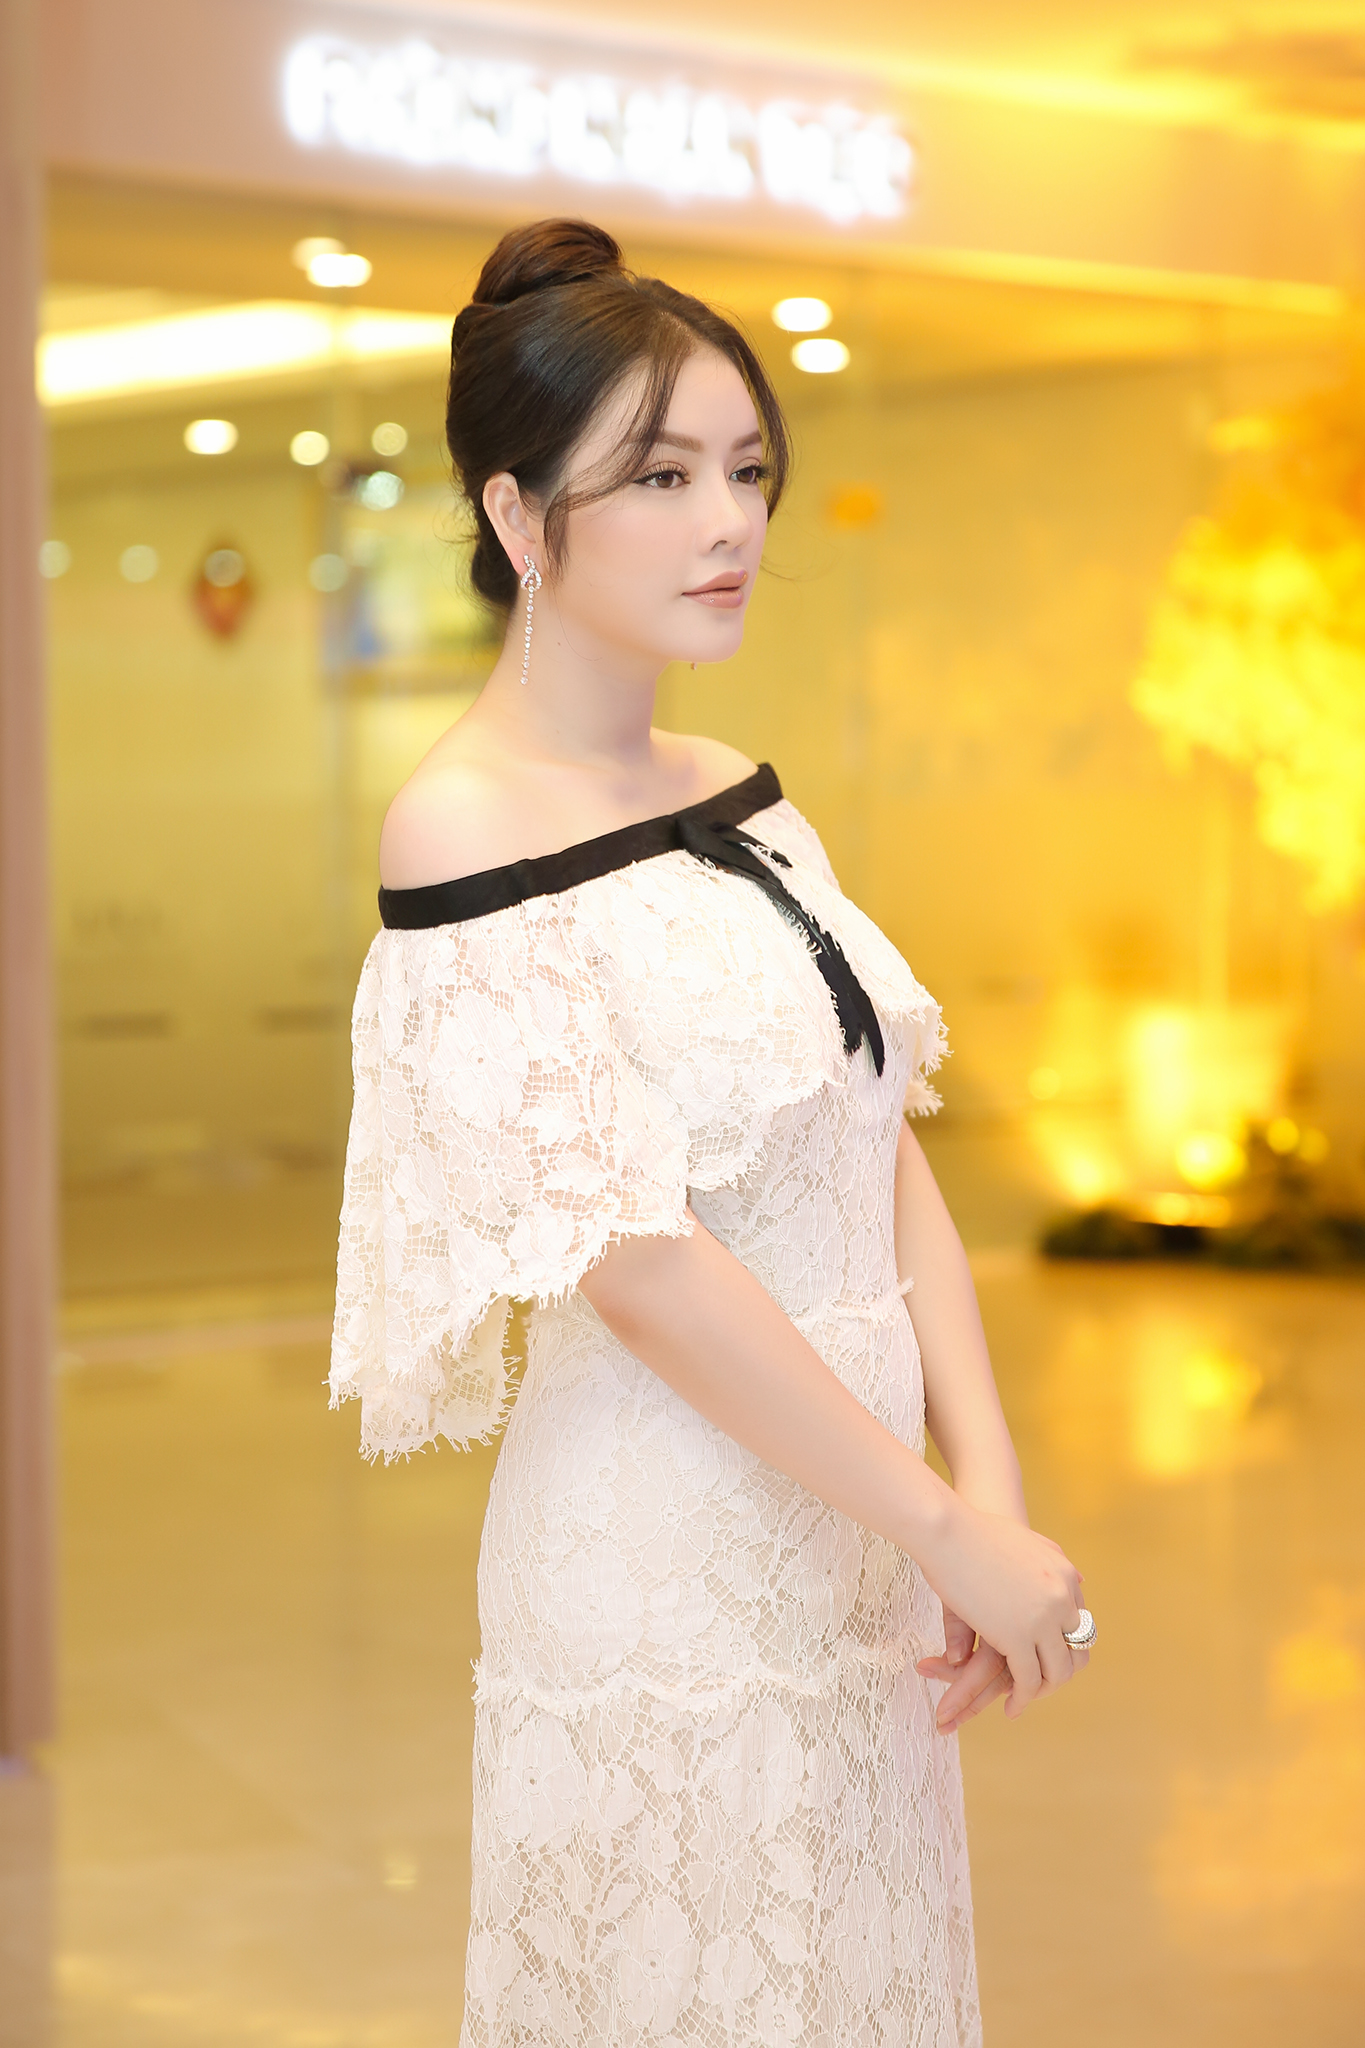 Váy nữ thời trang cao cấp 𝘾𝙝𝙖𝙣𝙚𝙡 𝘾𝙝𝙖𝙣n𝙚𝙡 CN thiết kế nữ tính,  thanh lịch | Shopee Việt Nam